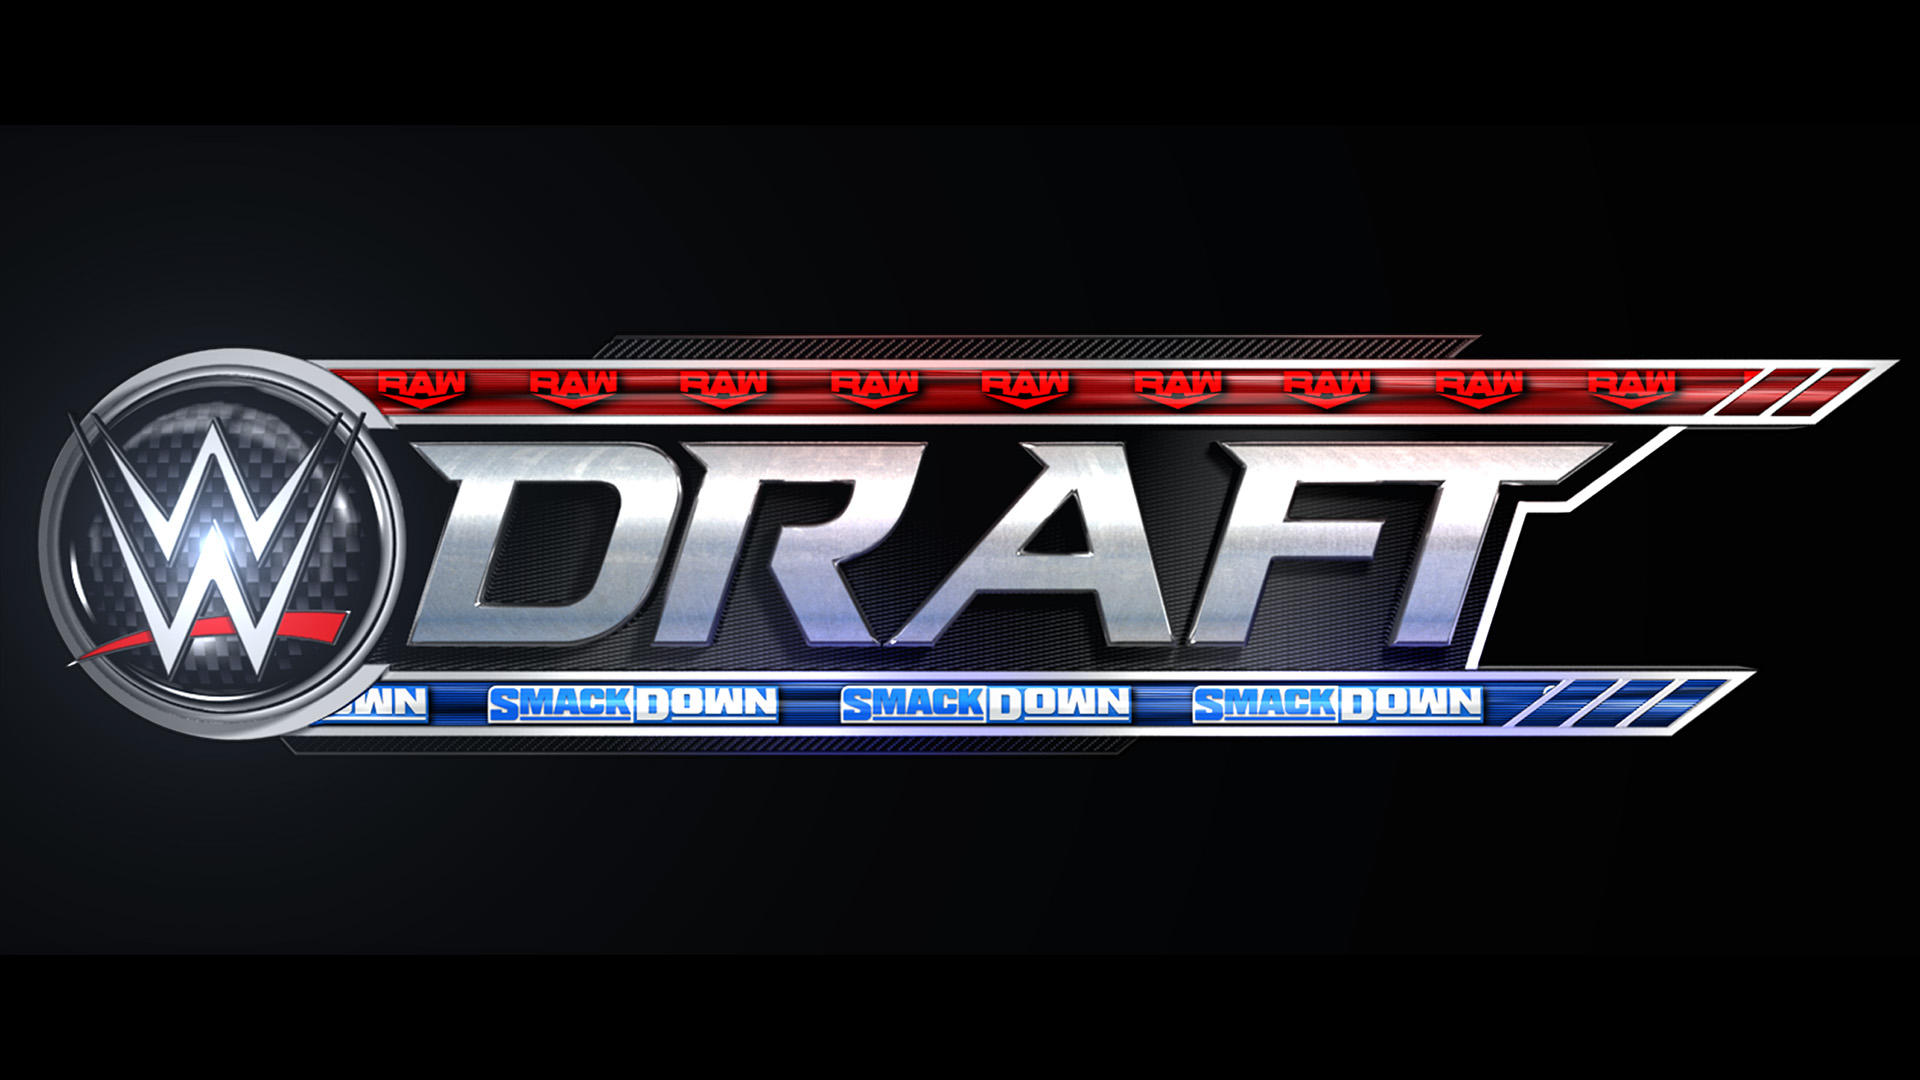 WWE enthüllt fast 100 Superstars, die für Draft-Picks in Frage kommen, Top-ausgeschiedene Superstars und Kadernotizen